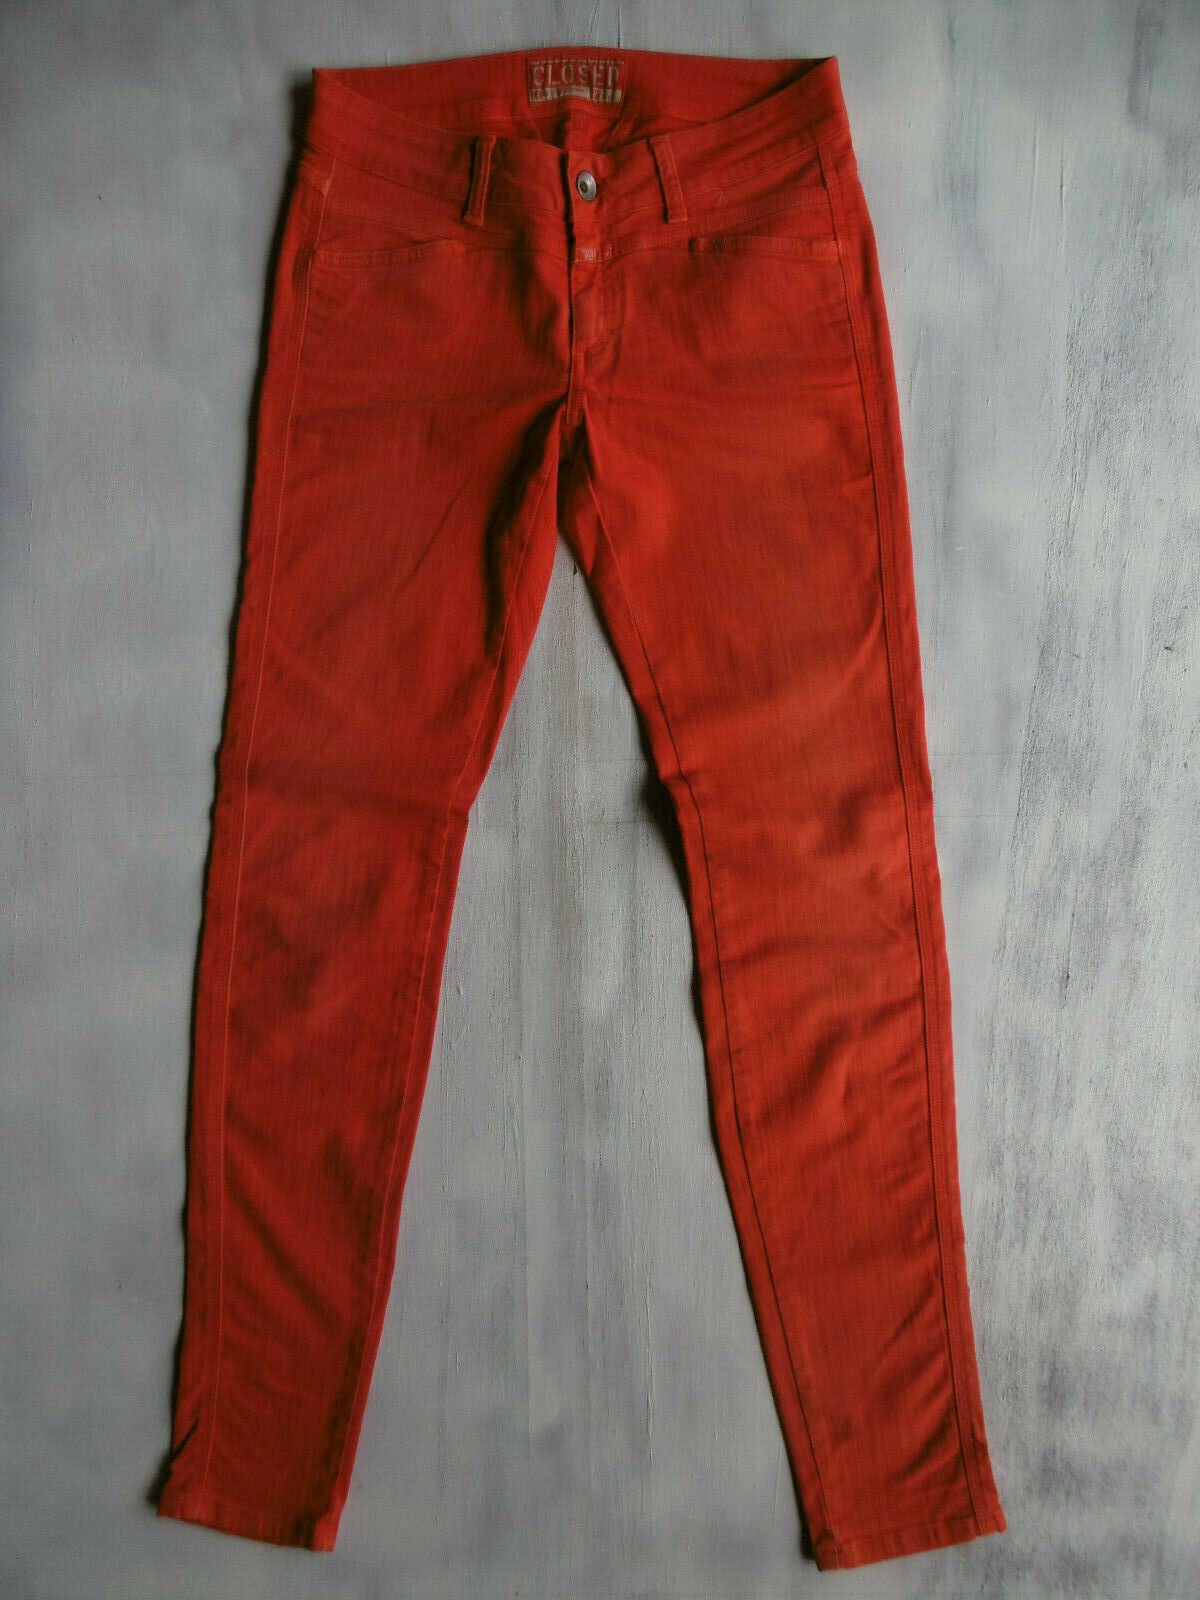 Betuttelen Aanzetten onszelf Closed Pedal Star skinny stretch Jeans Hose Rot Gr 34 W26/L32 L34 1AZust.  ´852 | eBay